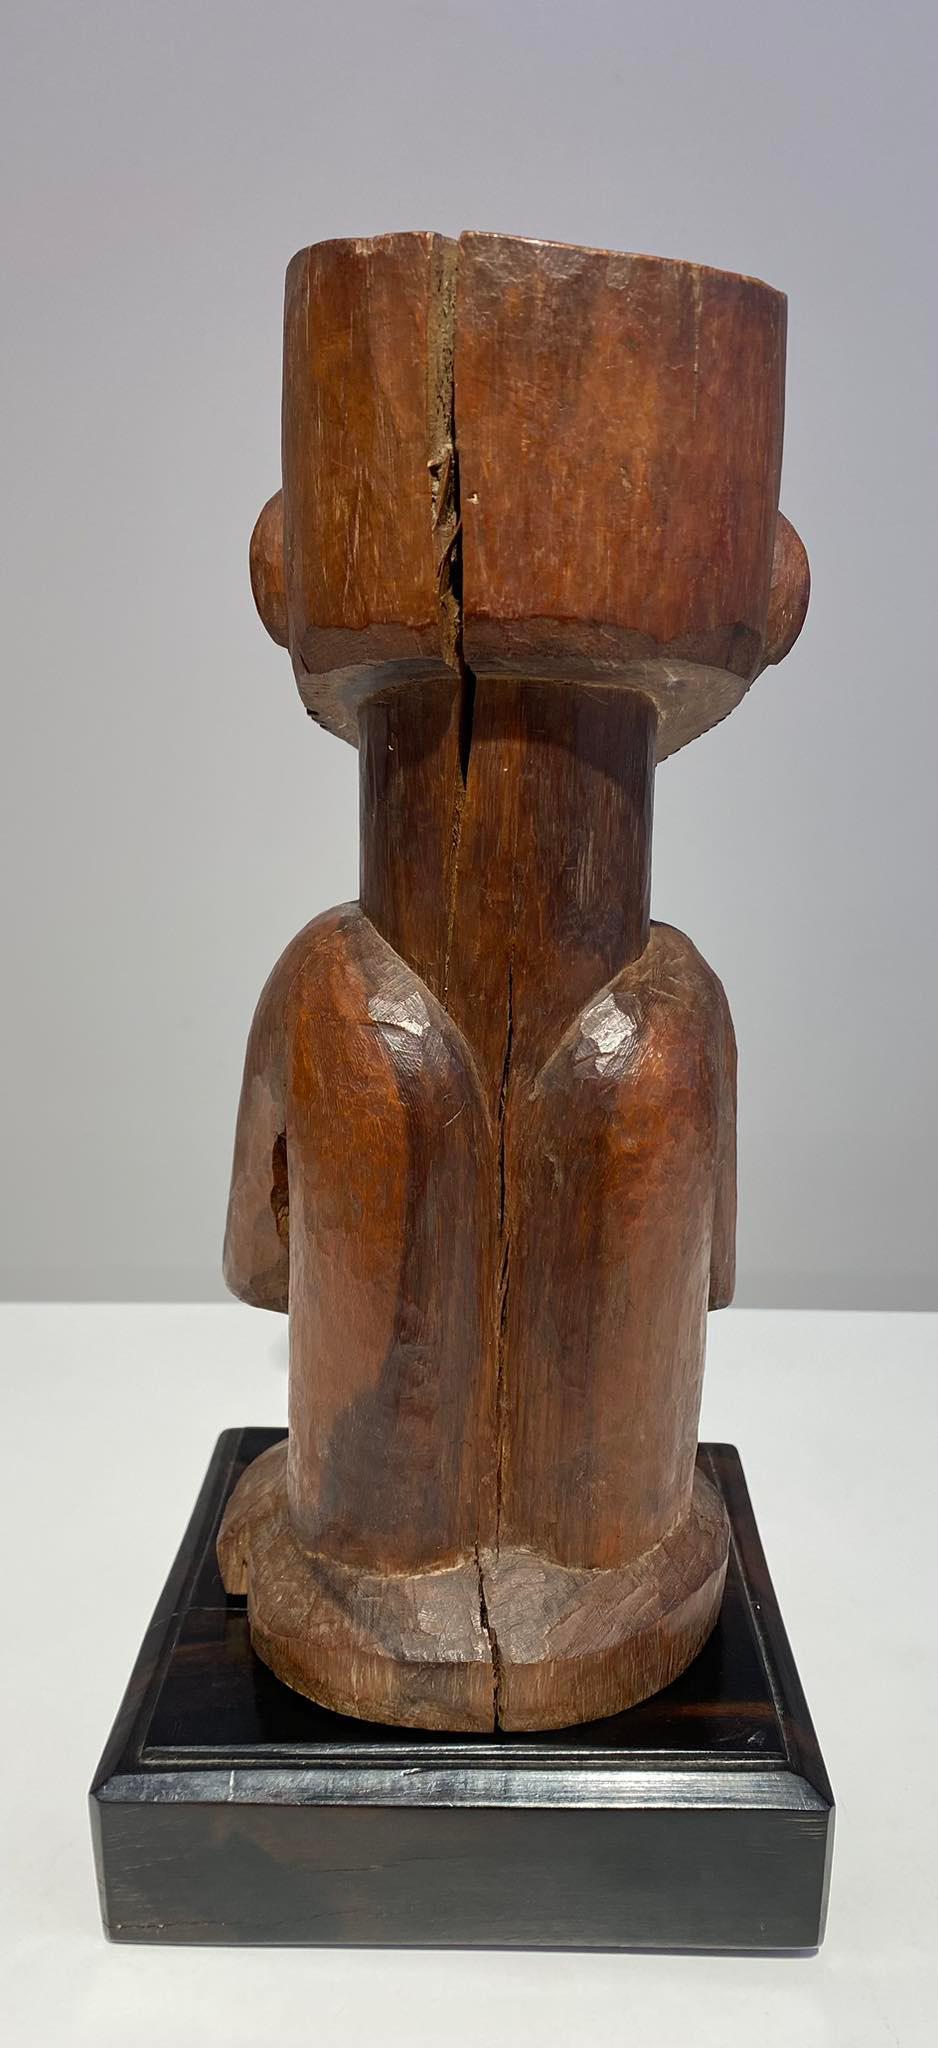 Legno massiccio Feticcio dell'antenato in legno Kusu ca 1900 DR Congo Africa Arte Tribale dell'Africa Centrale in vendita